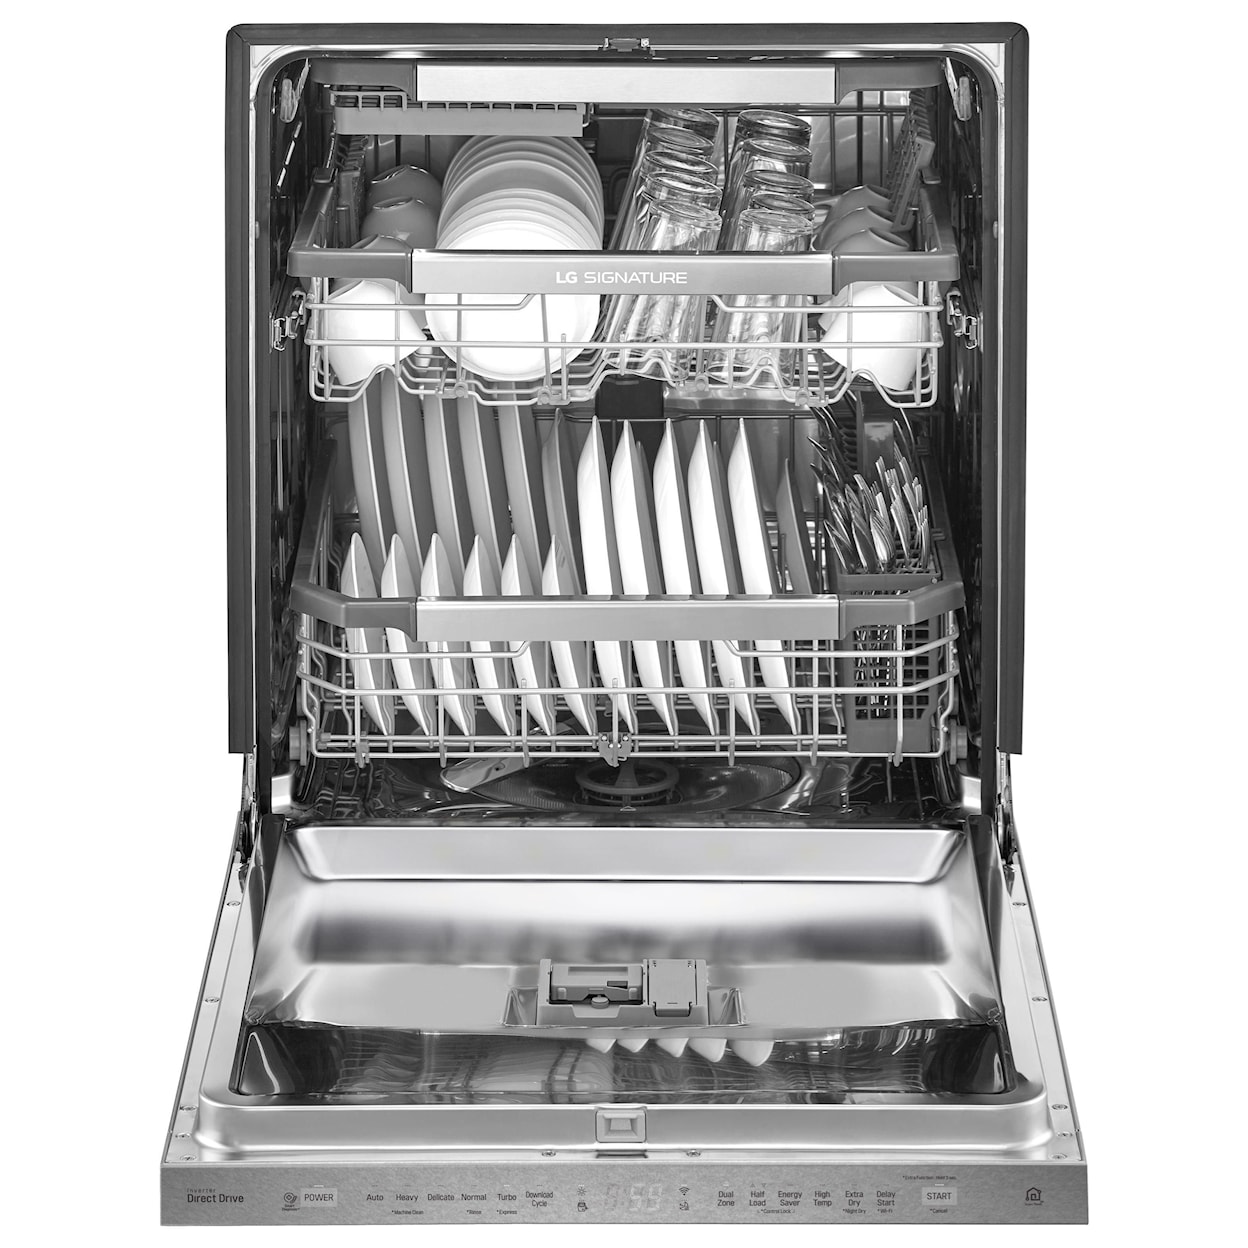 LG Appliances Dishwashers LG SIGNATURE Top Control Dishwasher